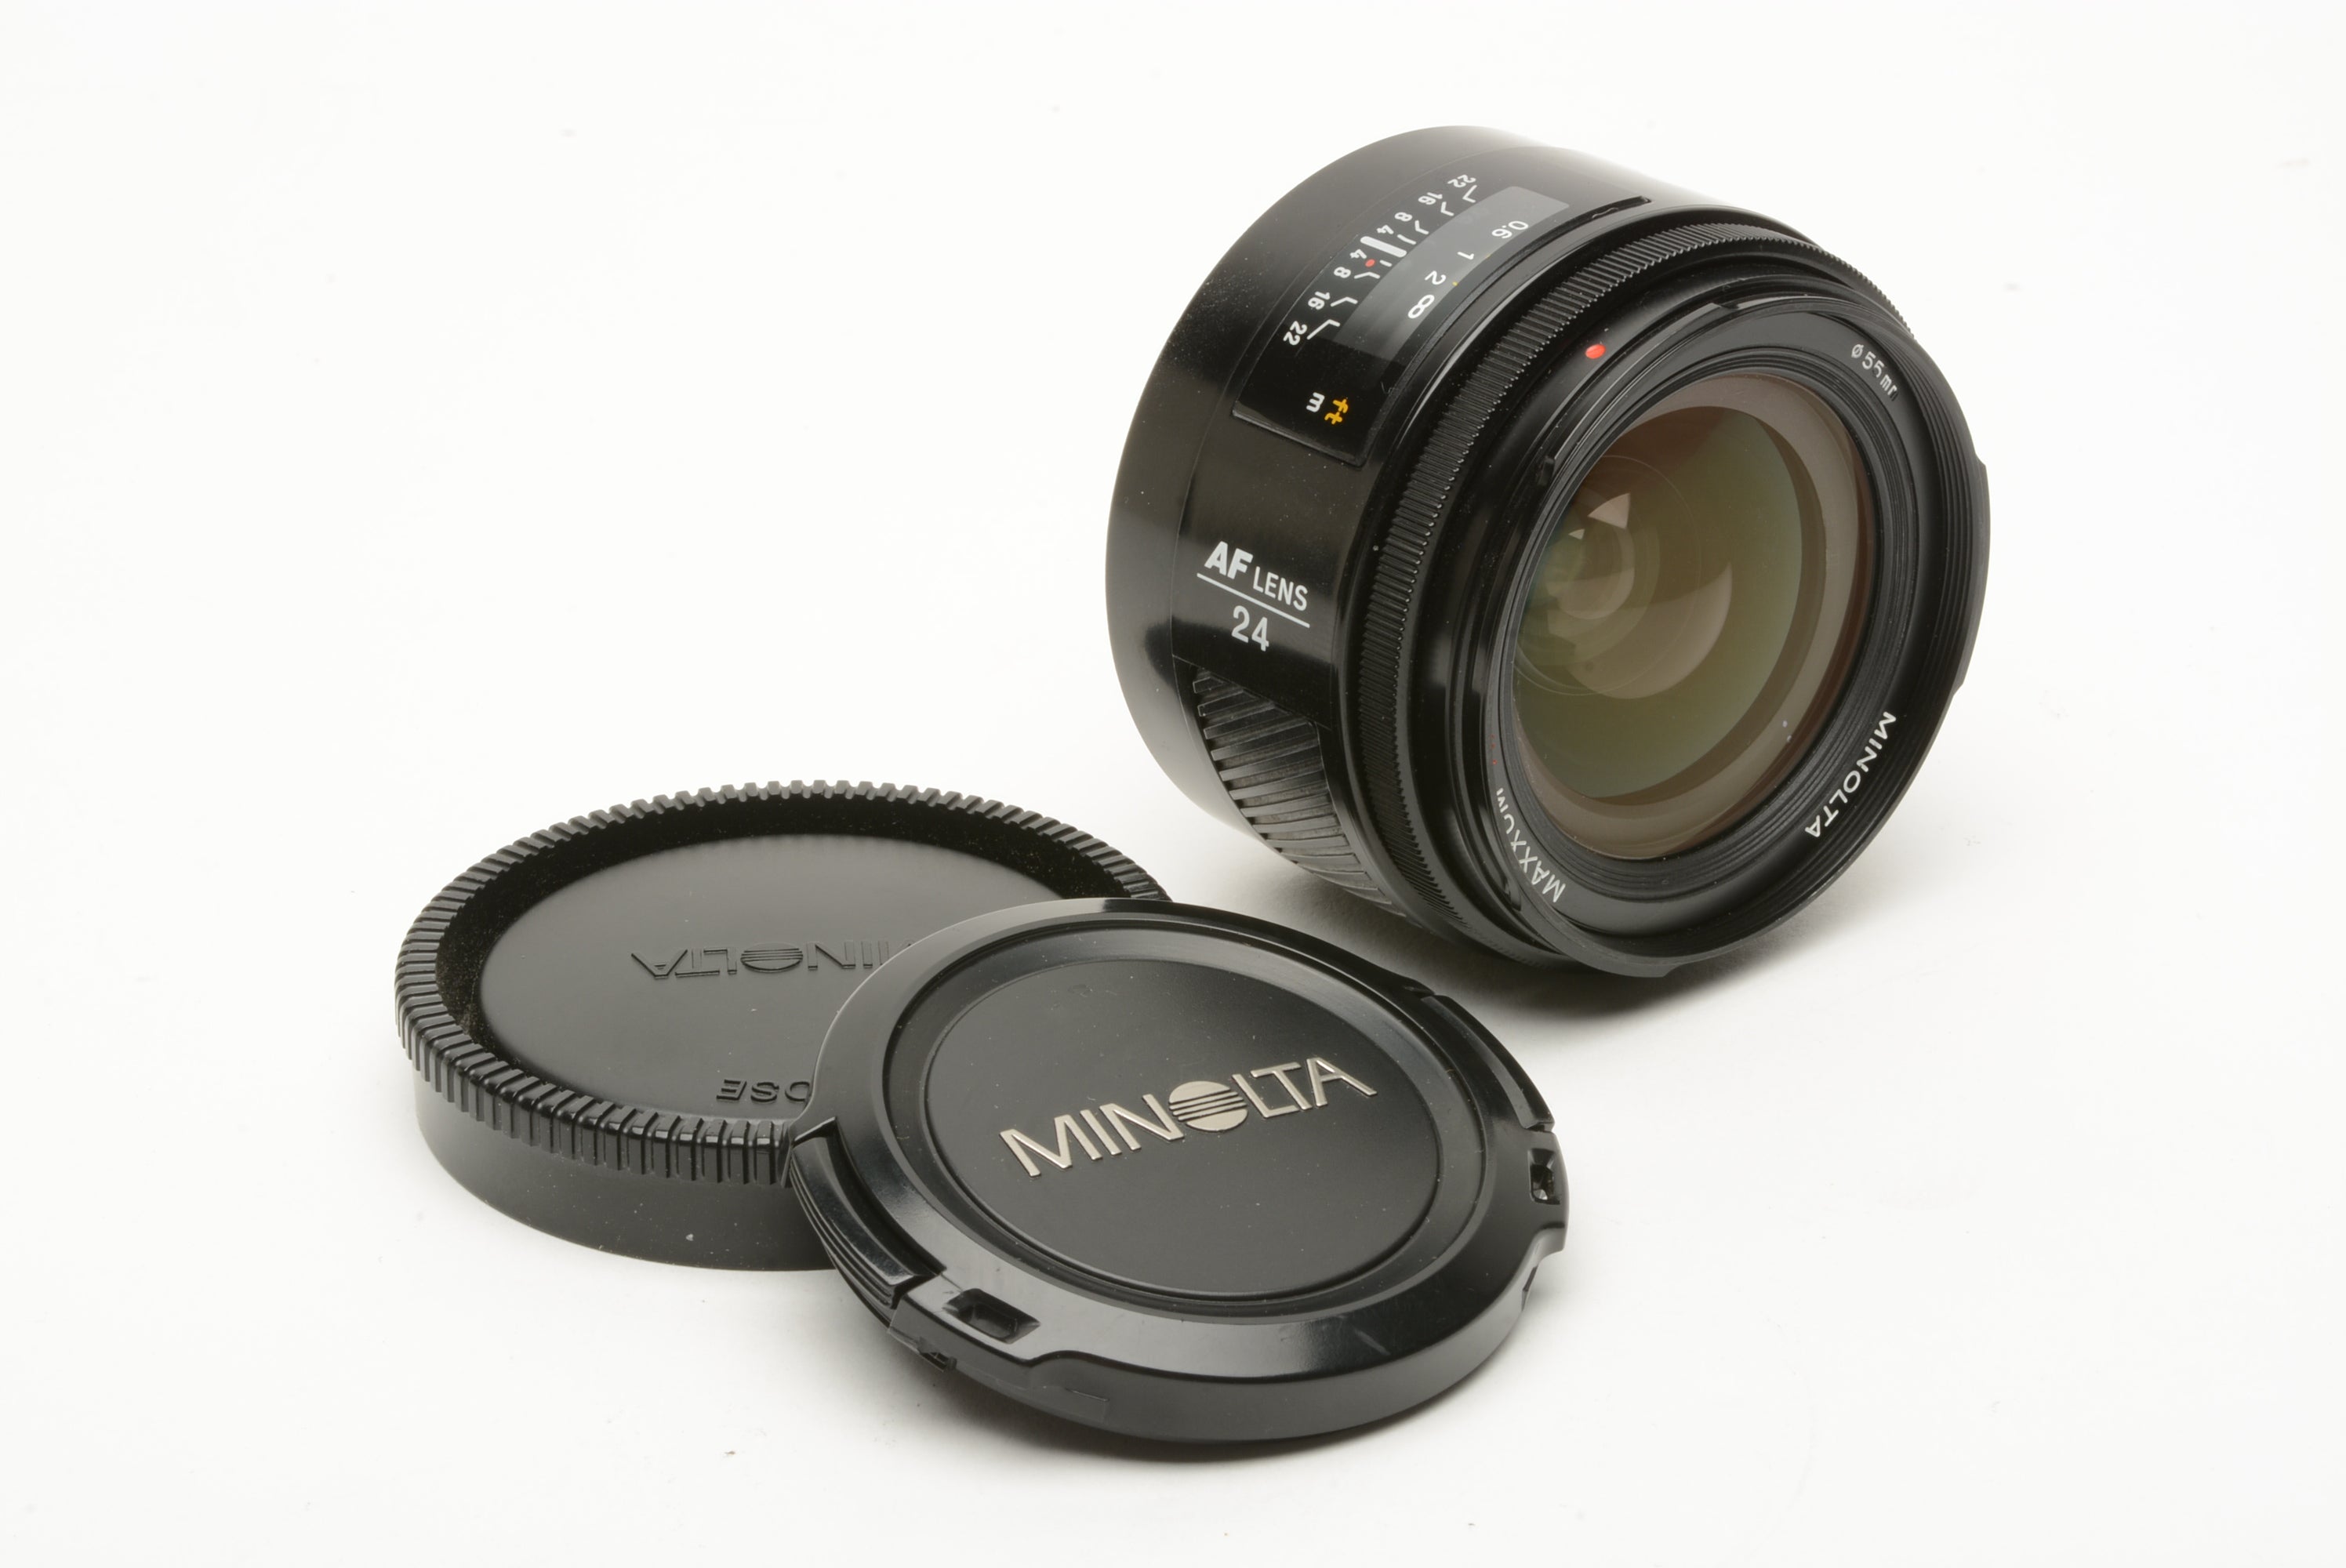 Minolta Maxxum AF 24mm f/2.8 Lens w/Caps – RecycledPhoto